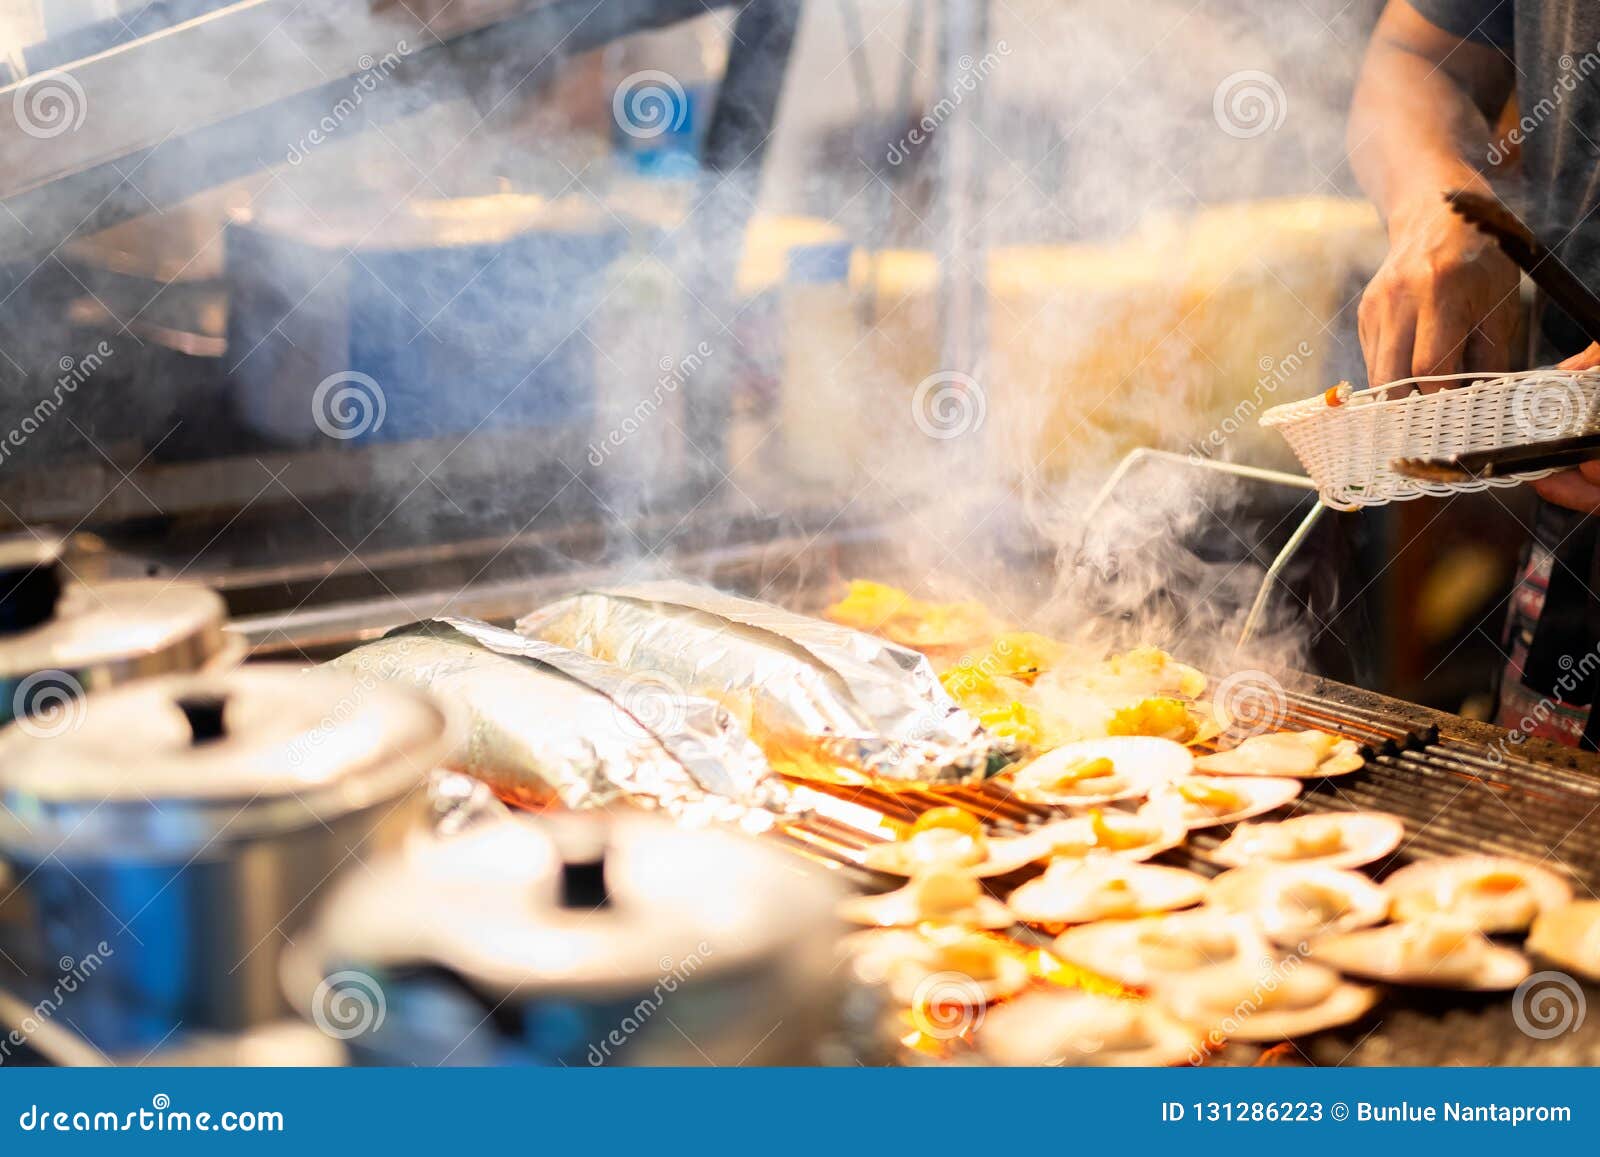 Le BBQ a grillé des festons sur le feu les fruits de mer thaïlandais ont grillé des festons avec du beurre et le fromage festons grillés se vendant au marché local de nuit de rue de la ville de Pattaya, Thaïlande